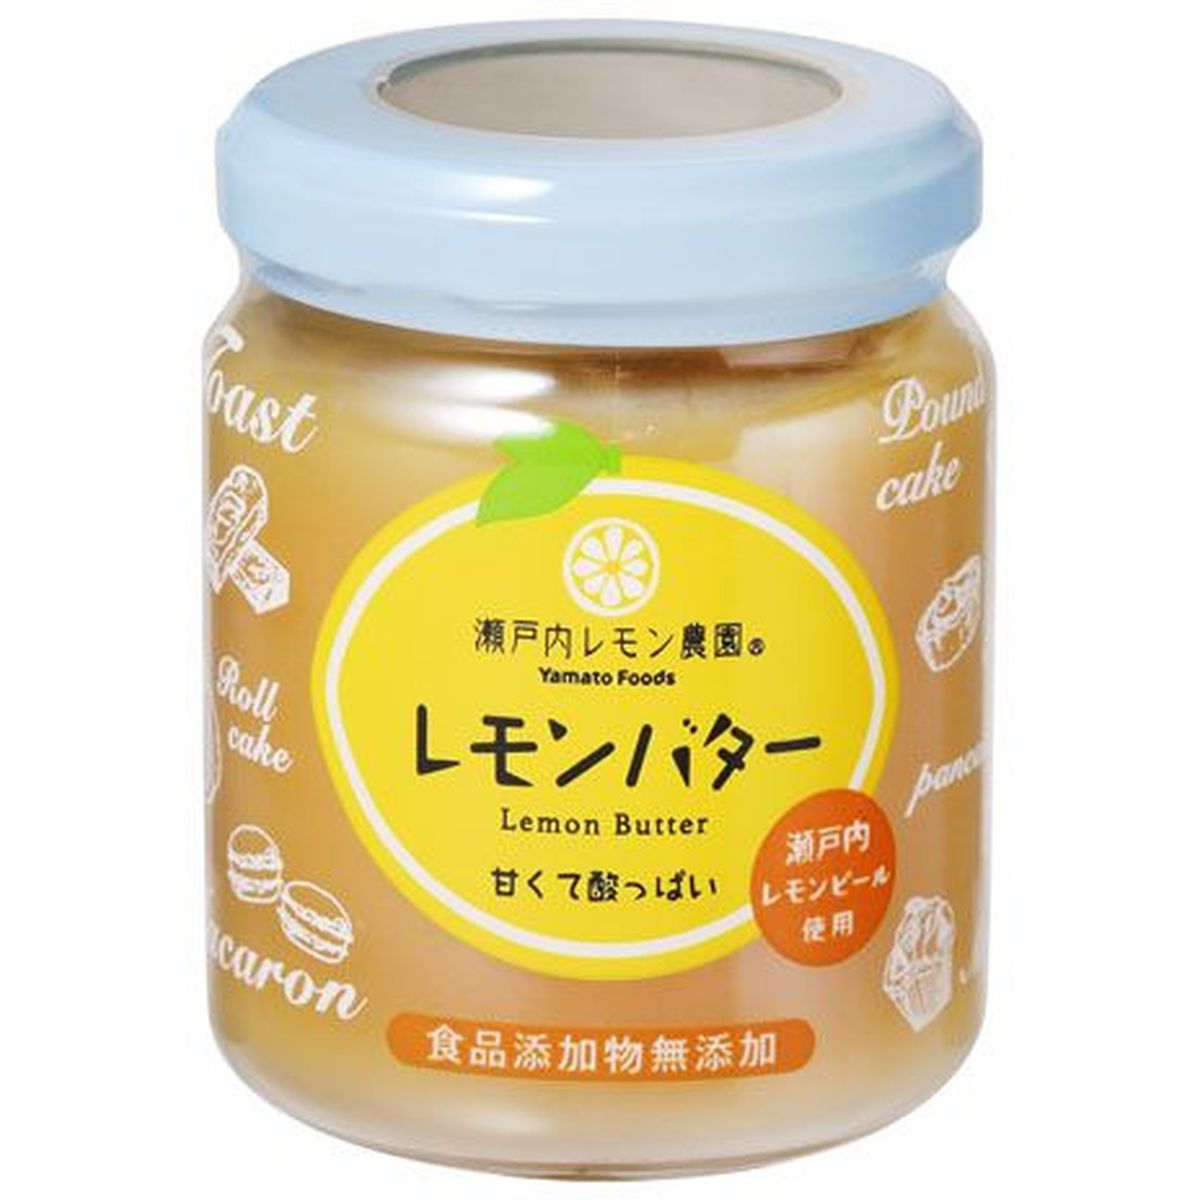 【12個入リ】ヤマトフーズ レモンバター 130g